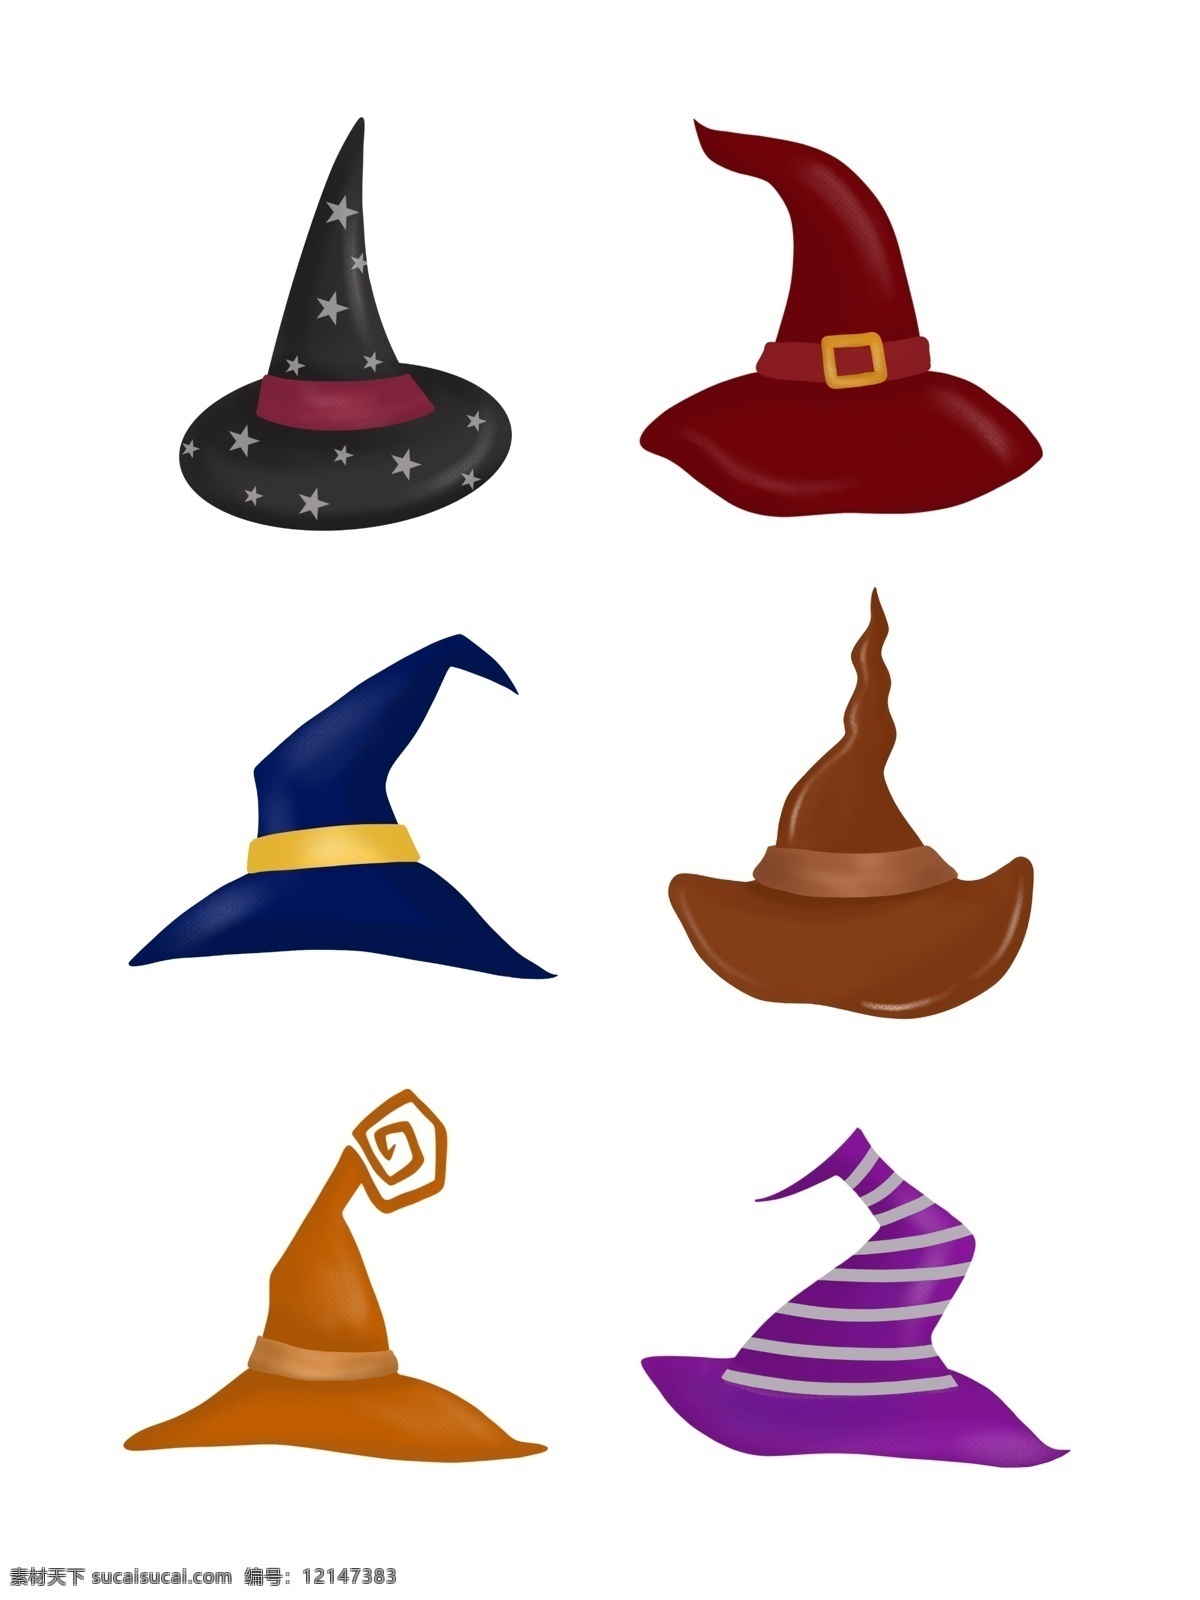 巫师帽 帽子 帽子设计 帽子图案 帽子图片 帽子素材 hat 时尚背景 绚丽背景 背景素材 背景图案 矢量背景 背景设计 抽象背景 抽象设计